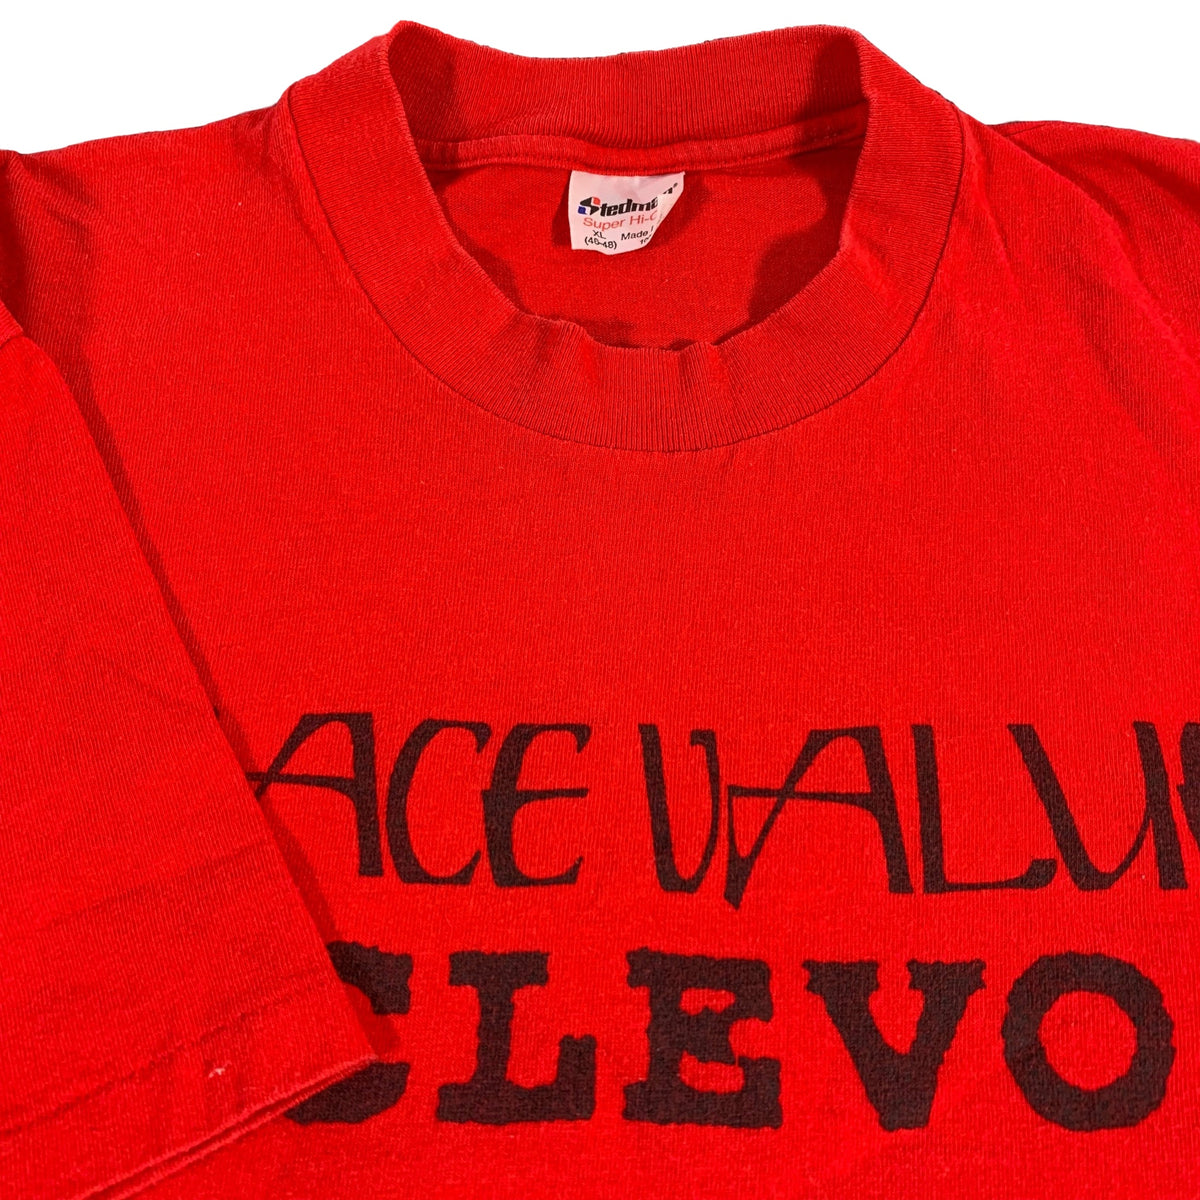 Vintage Face Value &quot;Conversion Records&quot; T-Shirt - jointcustodydc